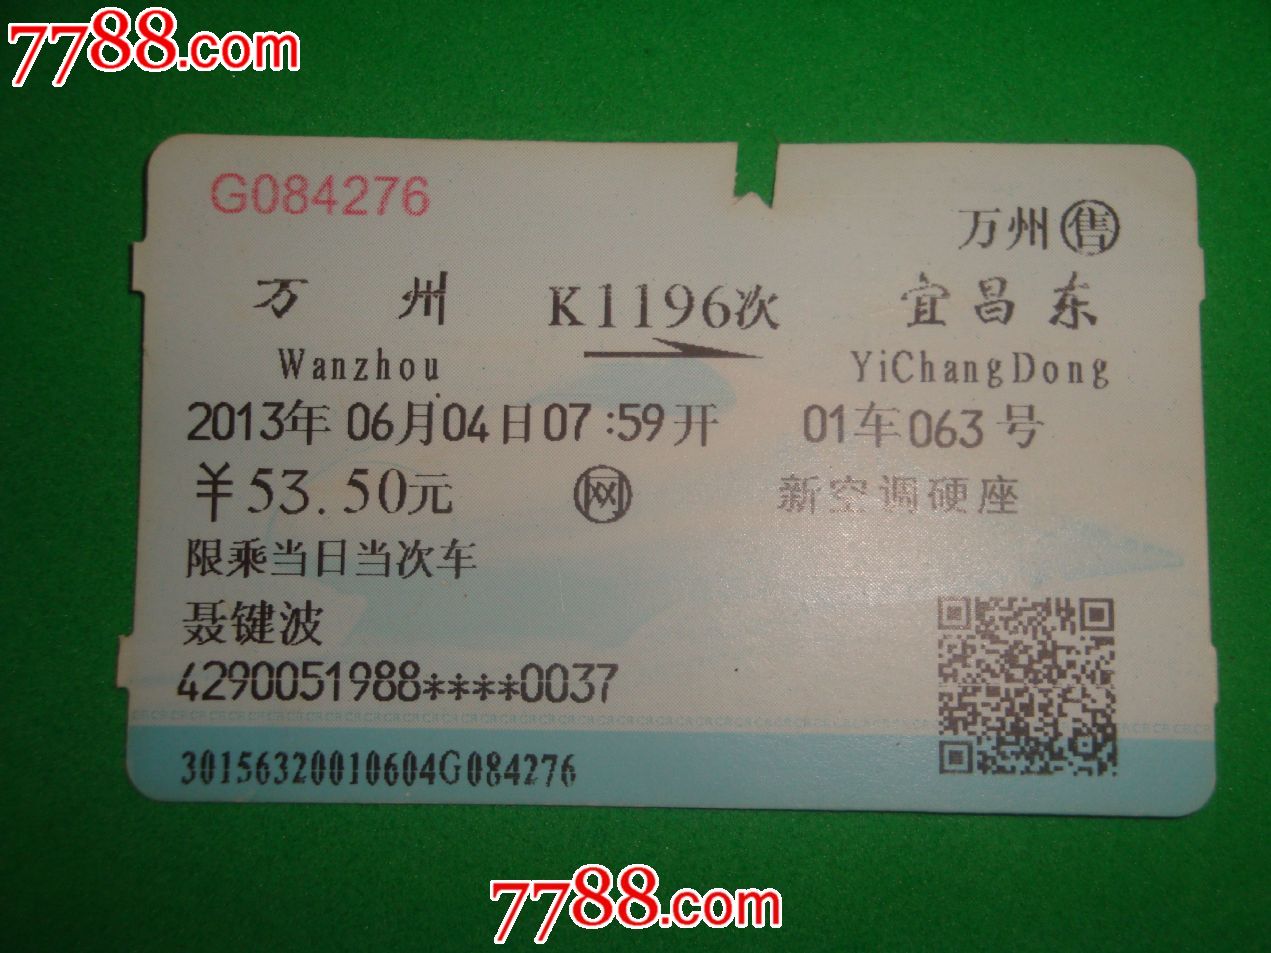 万州--宜昌东,火车票,普通火车票,年代不详,普通